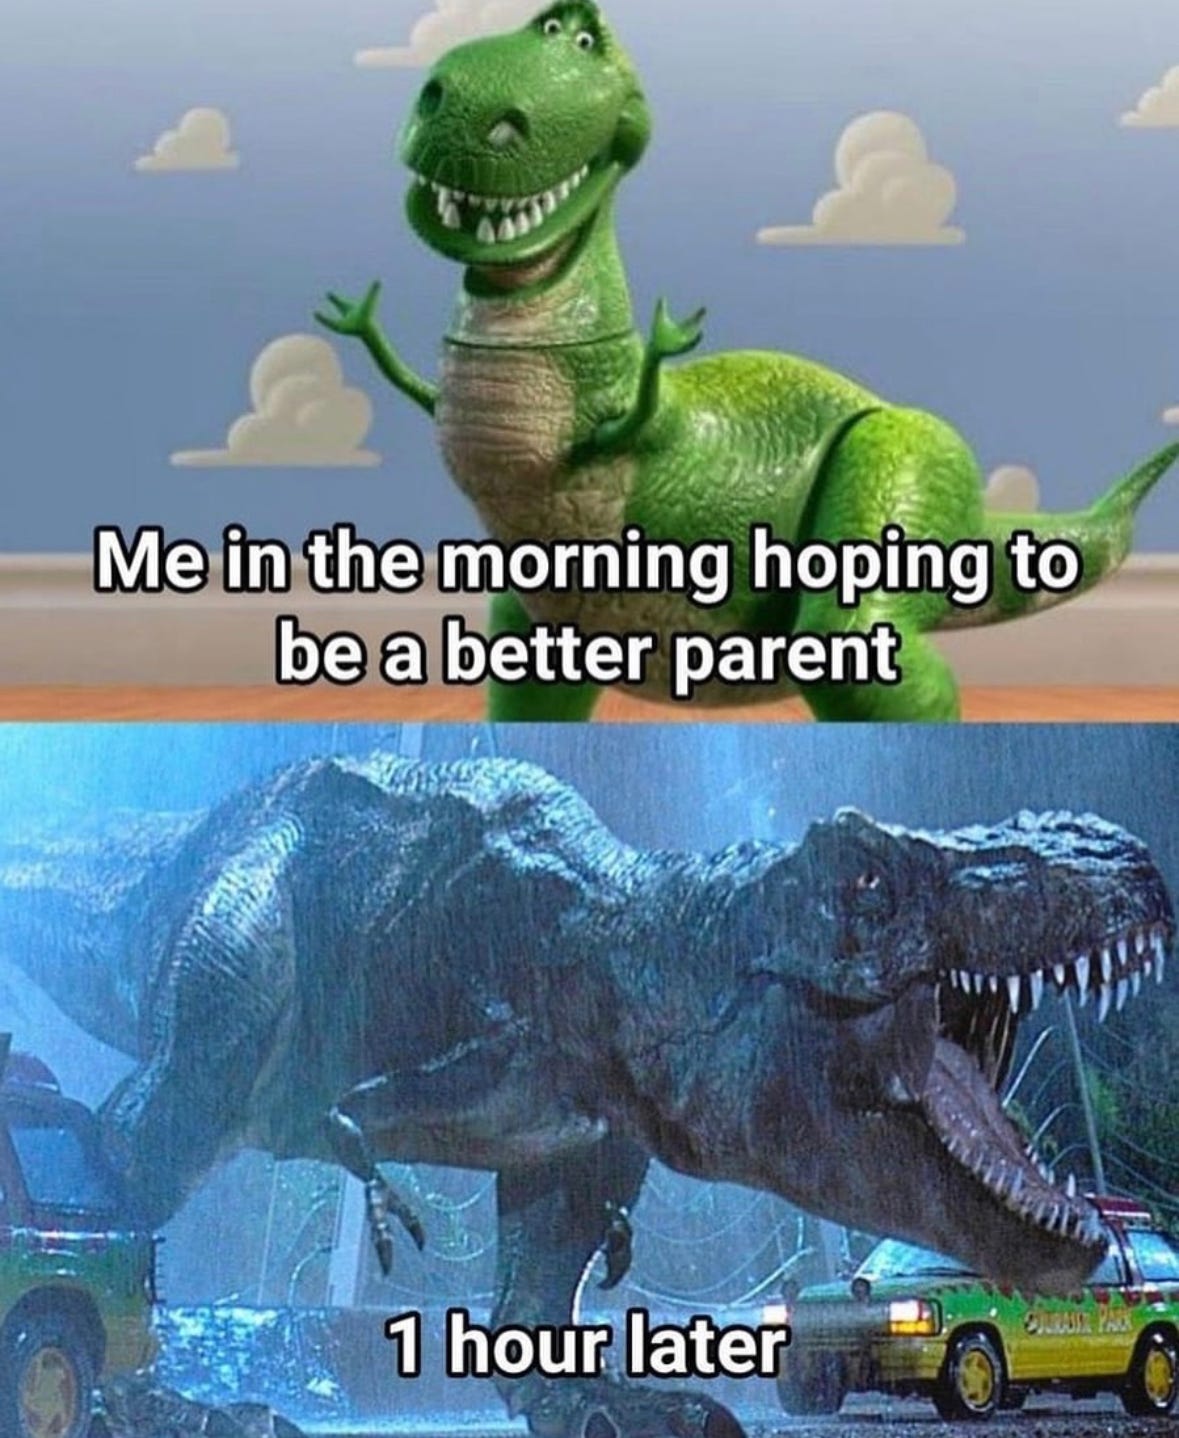 Meme showing a t-rex gentle parenting